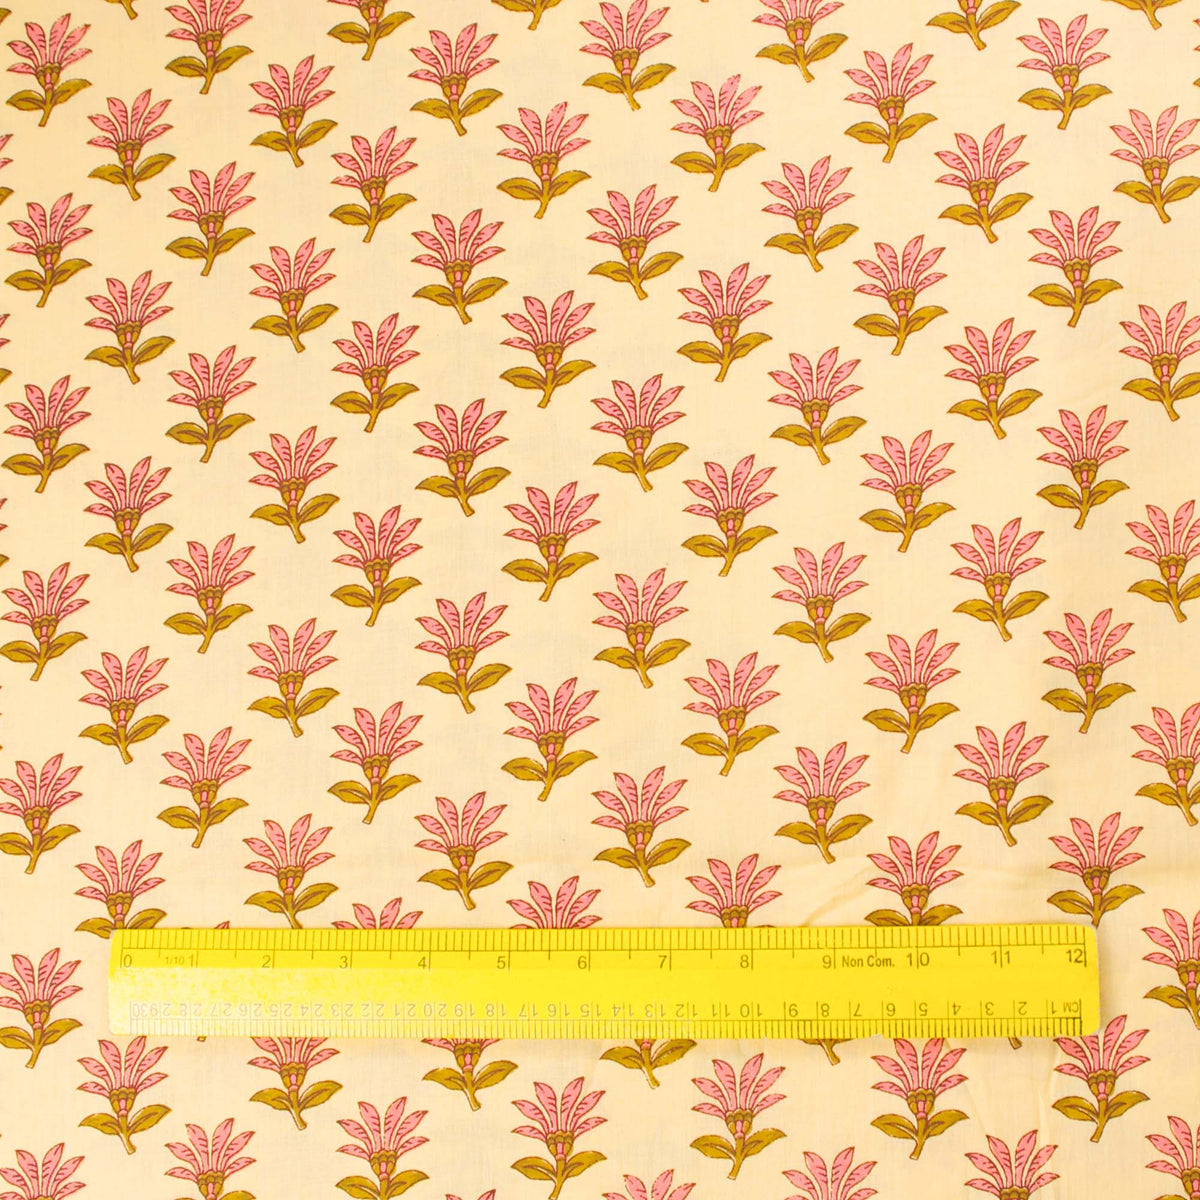 Handsiebbedruckter Stoff aus 100 % Baumwolle – Pink Floral Buti On Beige (Design 373)